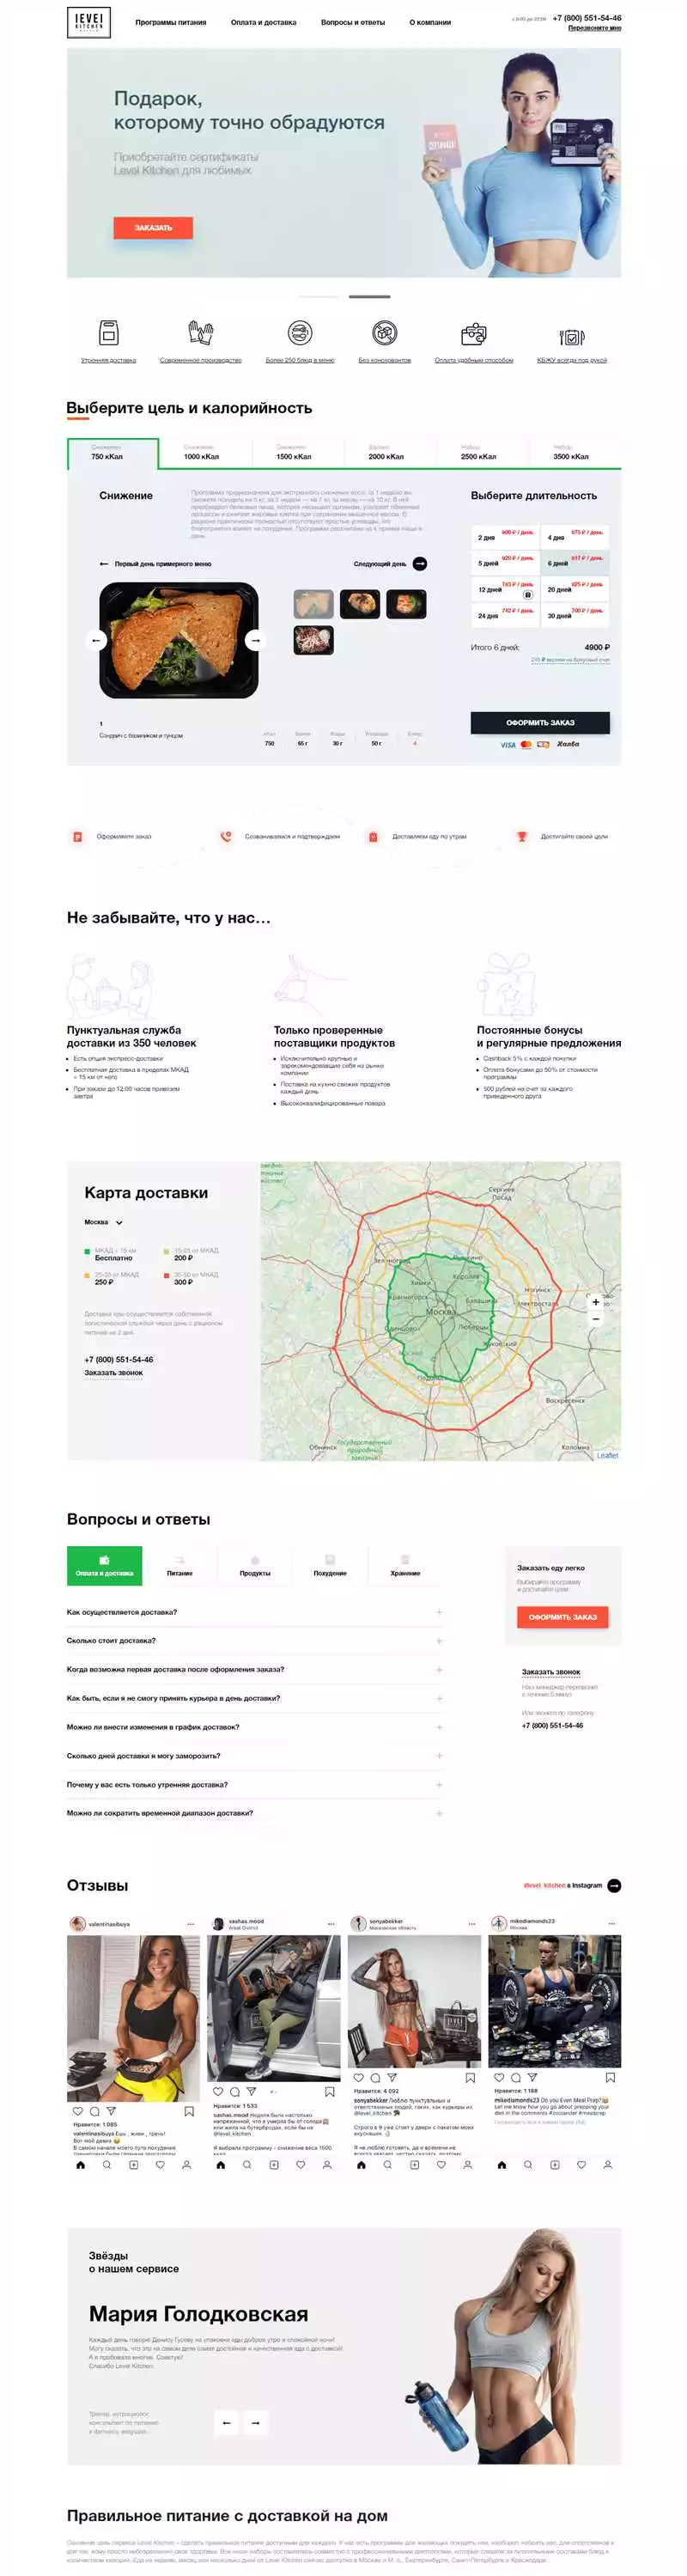 Примеры Разработанных Landing Page Для Стартапов В Алматы: Увеличьте Вашу Конверсию!